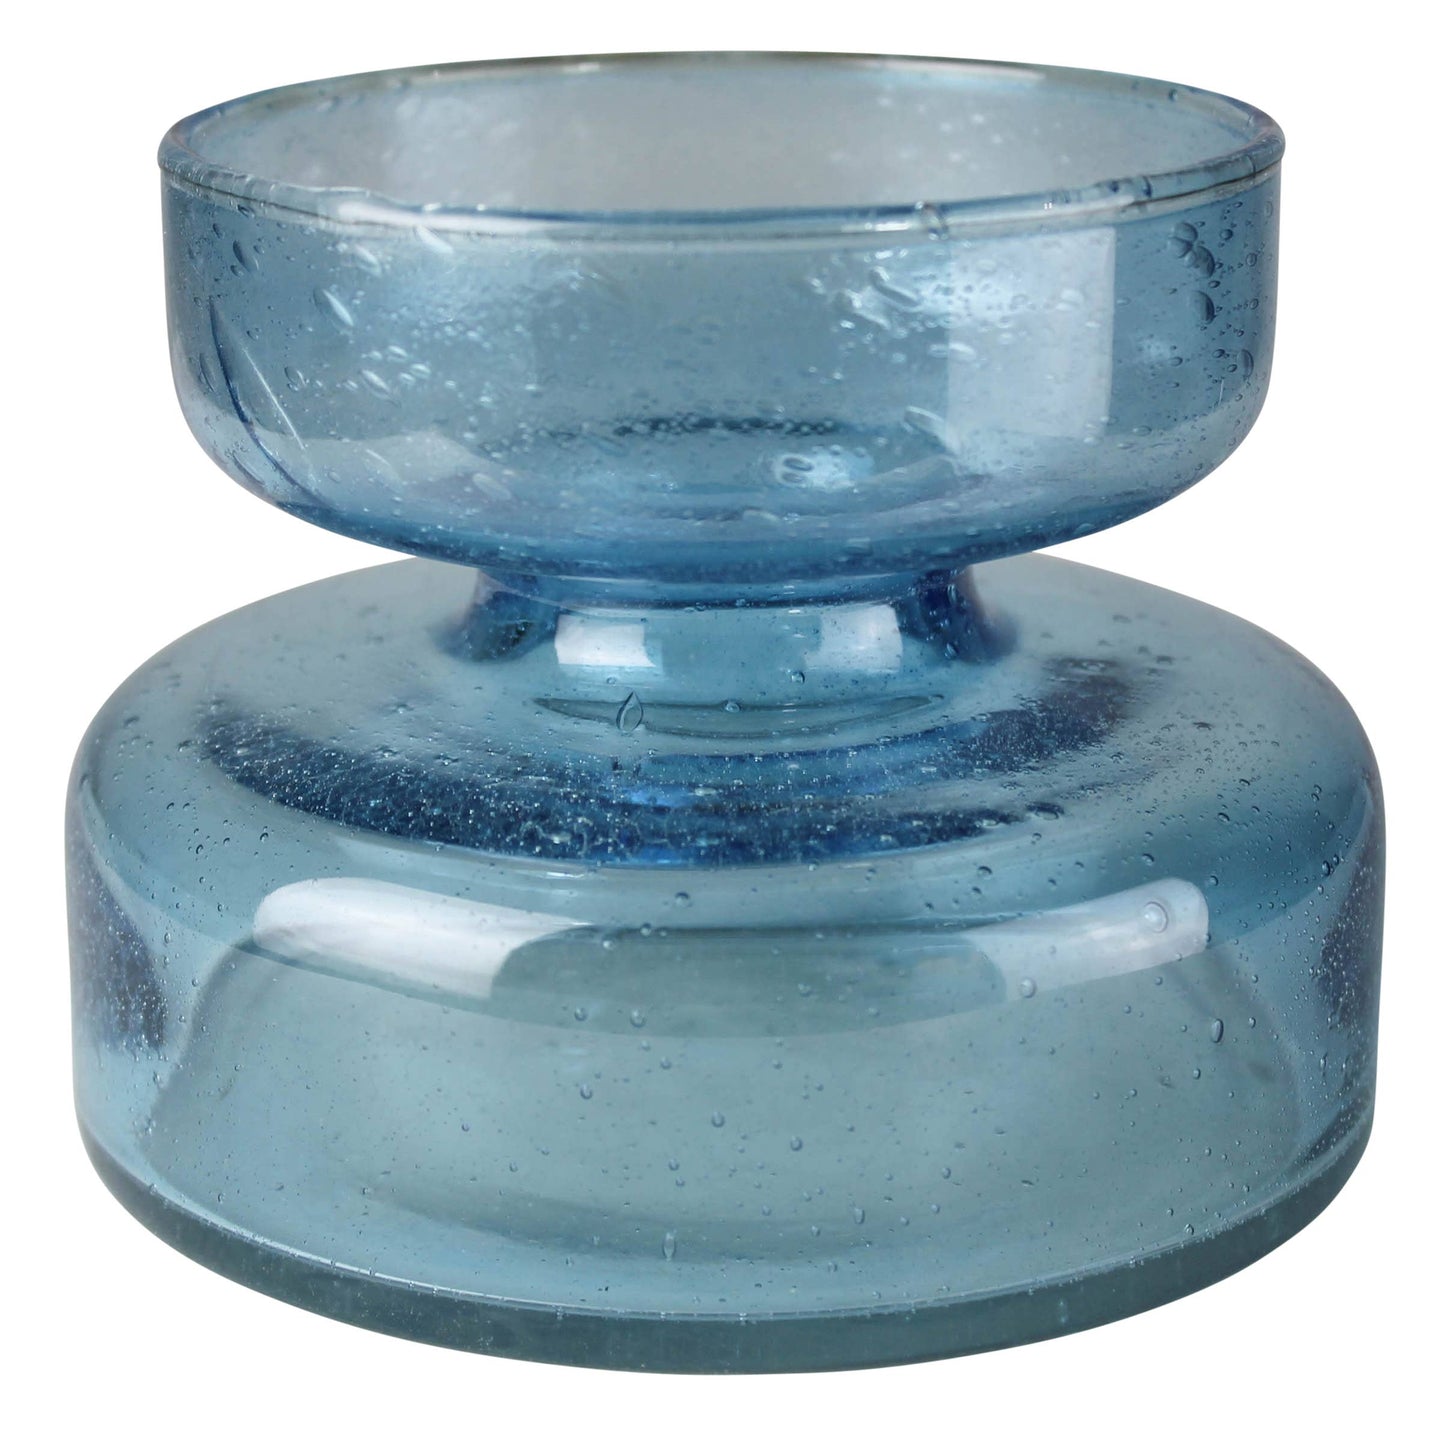 Blue Glass Bulb Vase